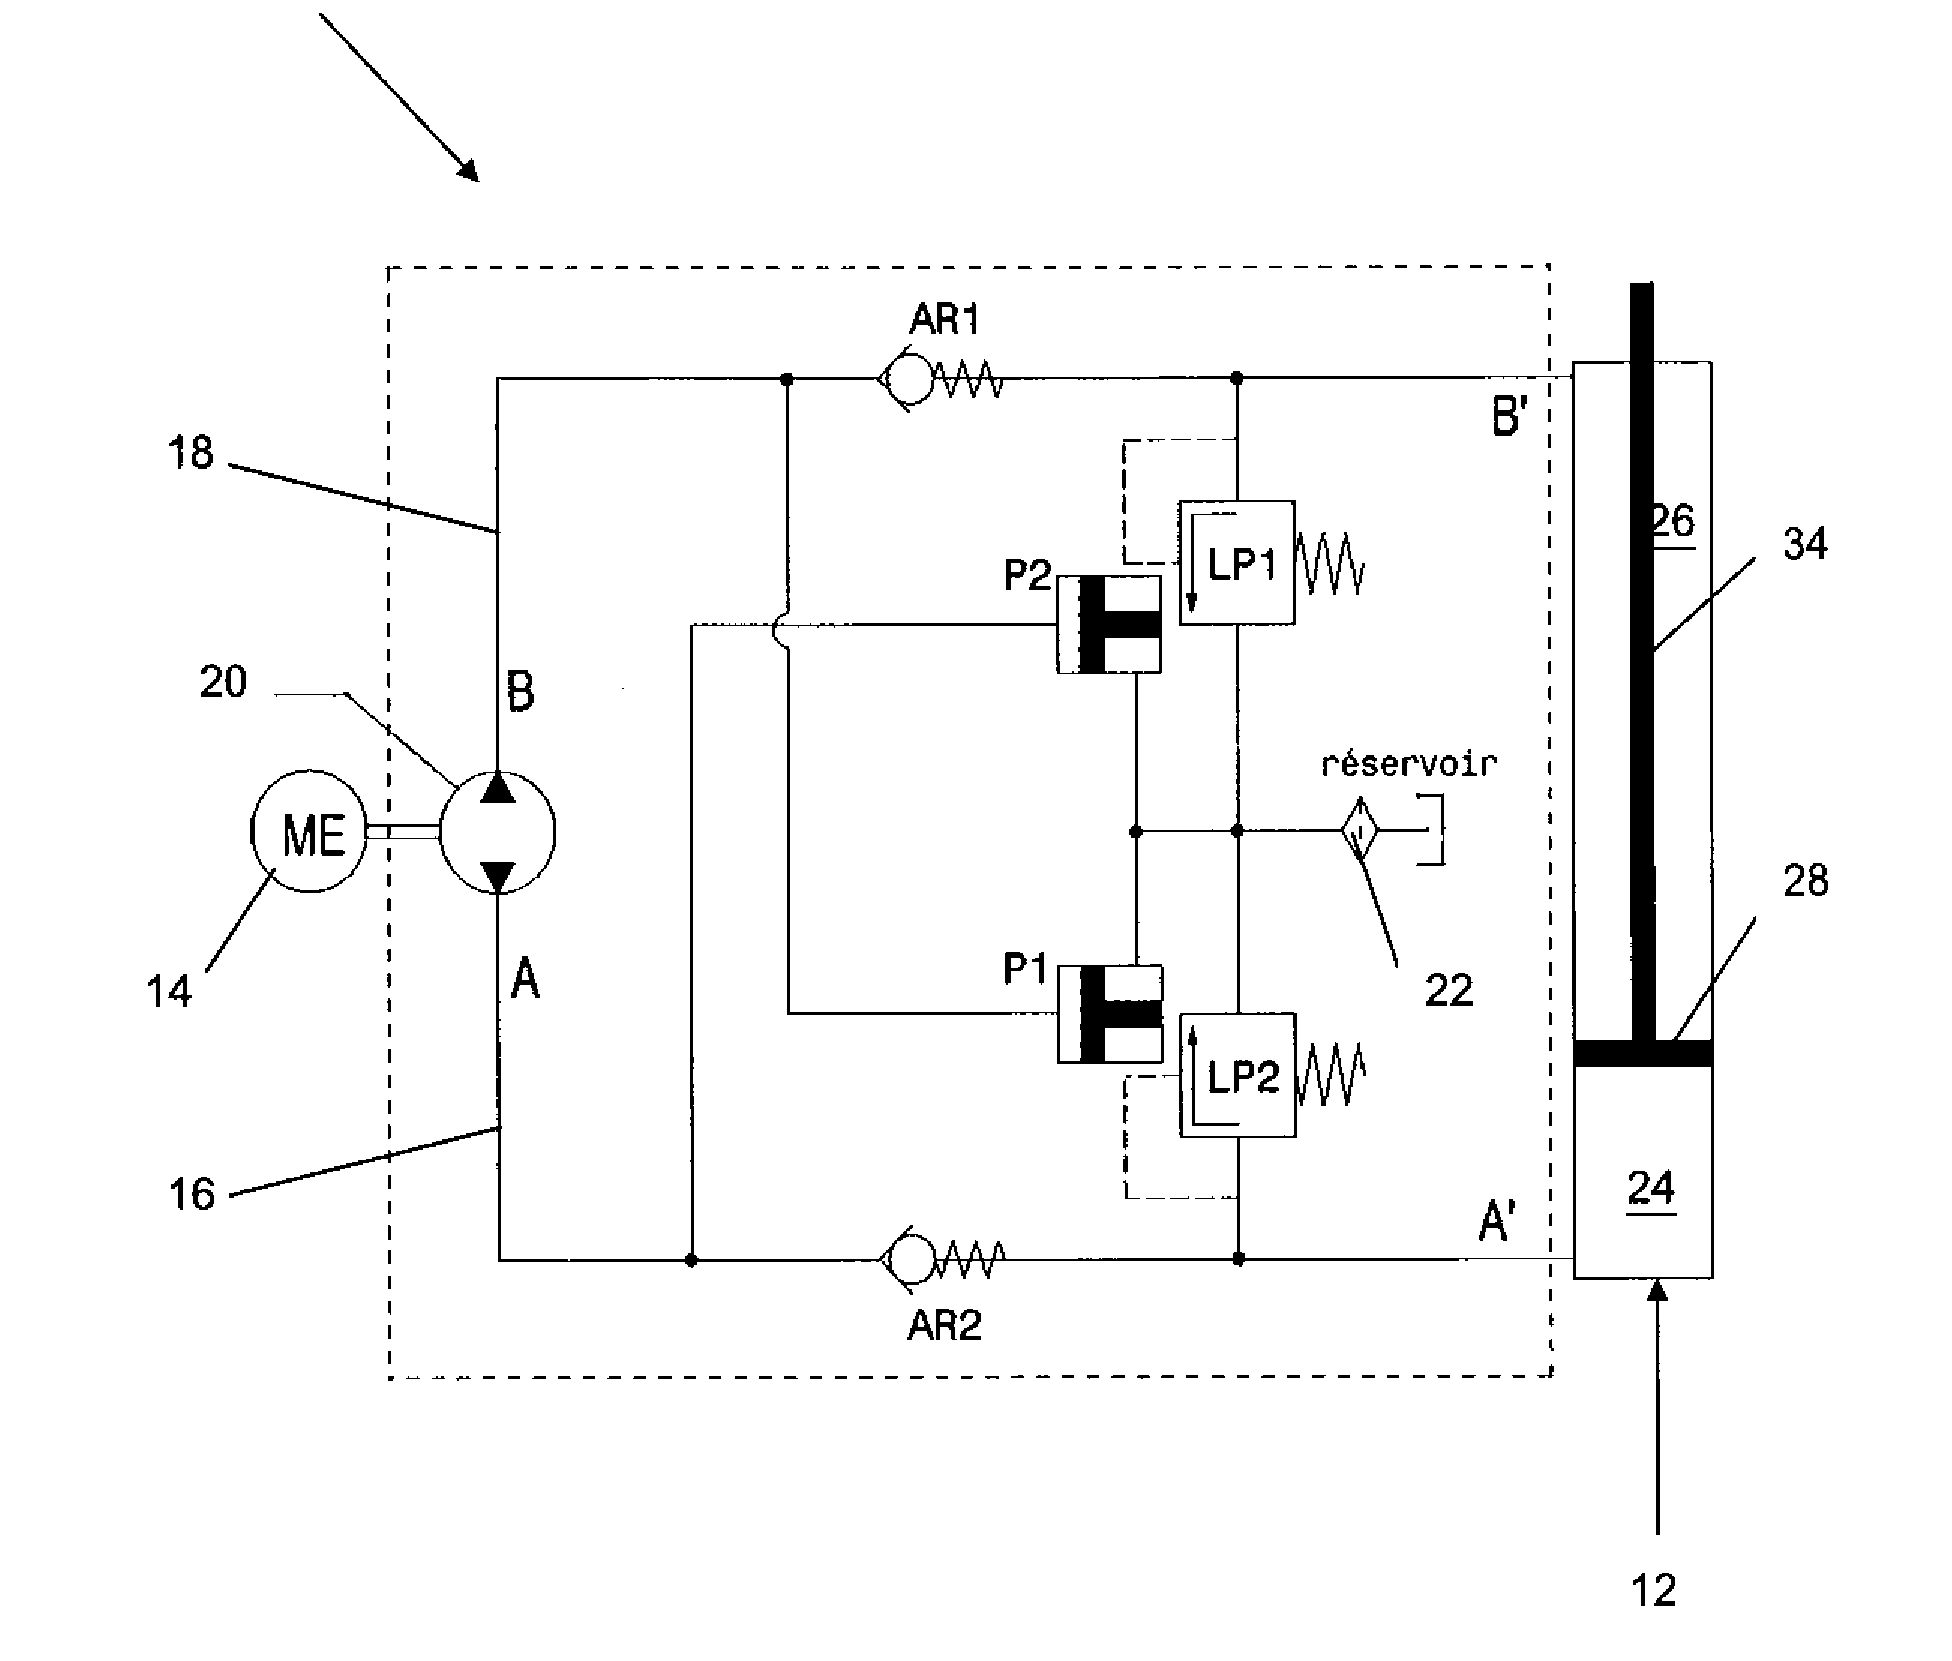 Hydraulic manifold pump